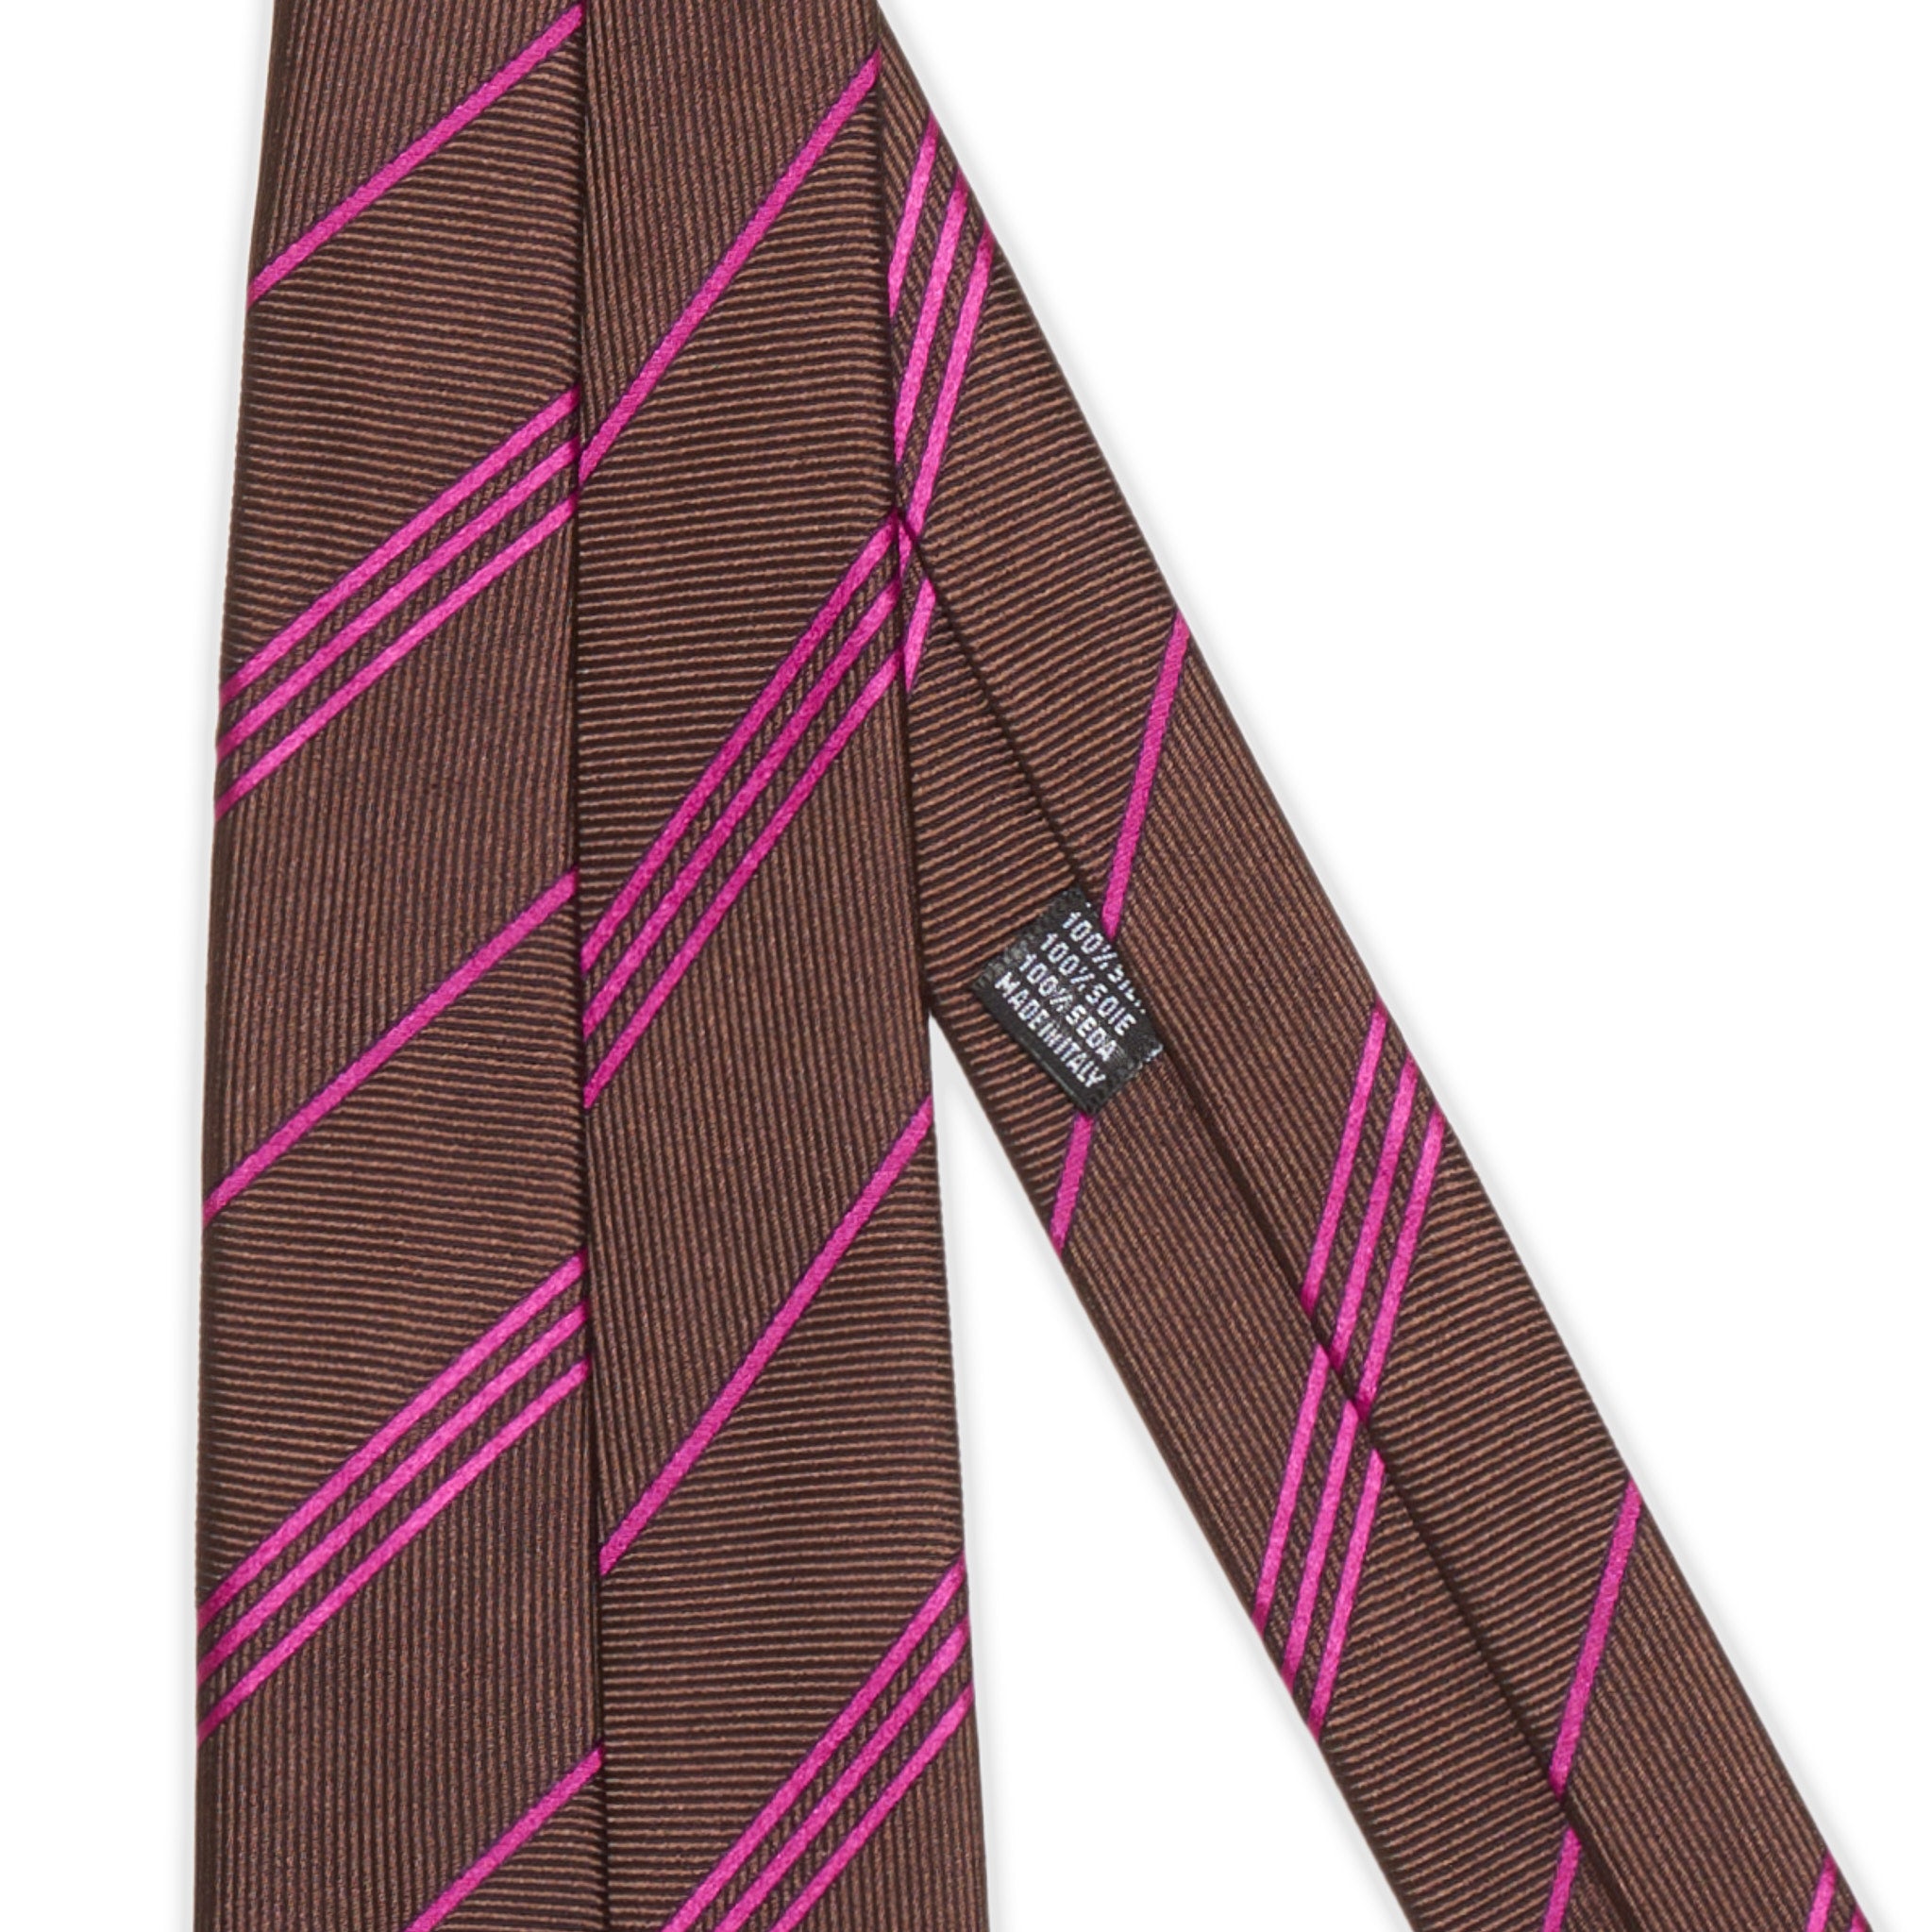 CESARE ATTOLINI Handmade Brown-Purple Striped Unlined Silk Tie NEW